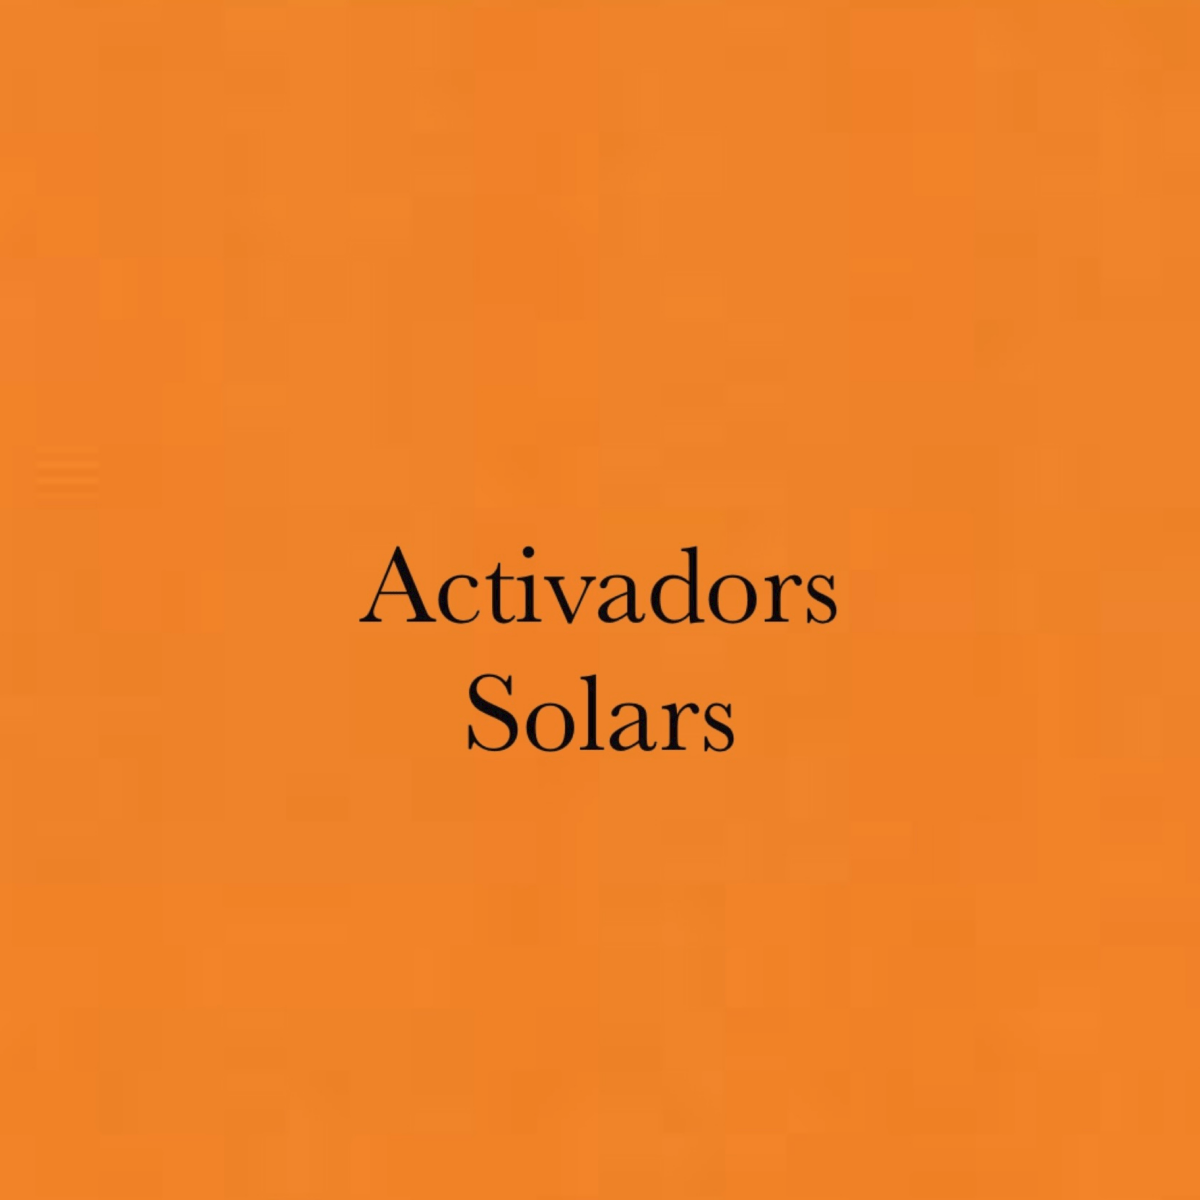 Activadors Solars